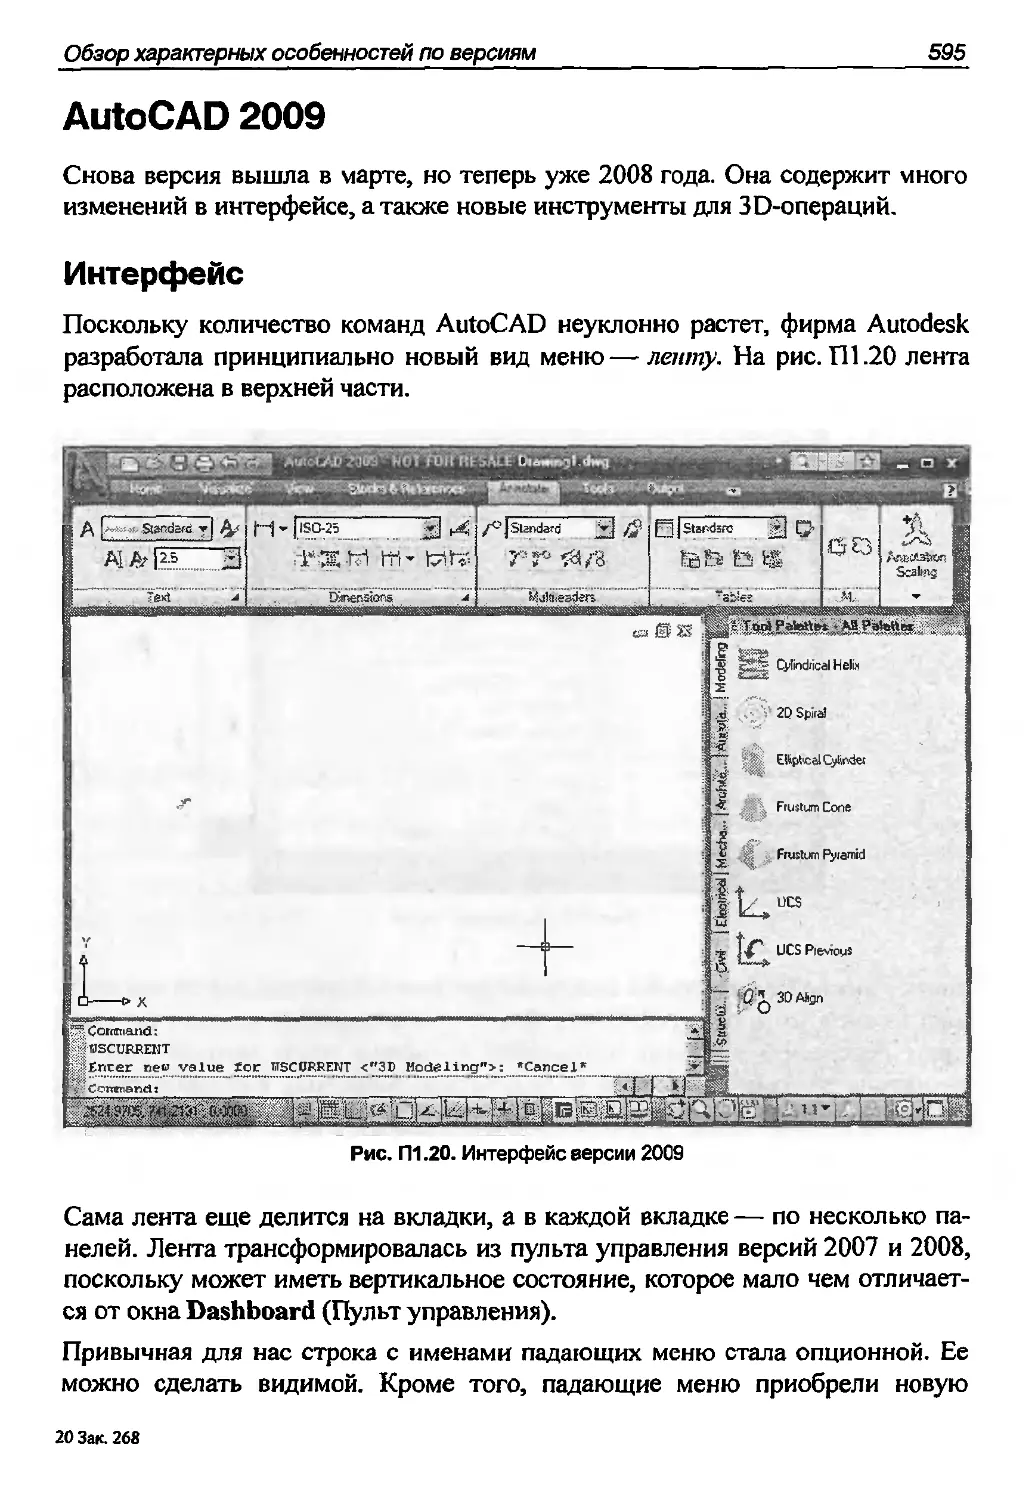 AutoCAD 2009
Интерфейс